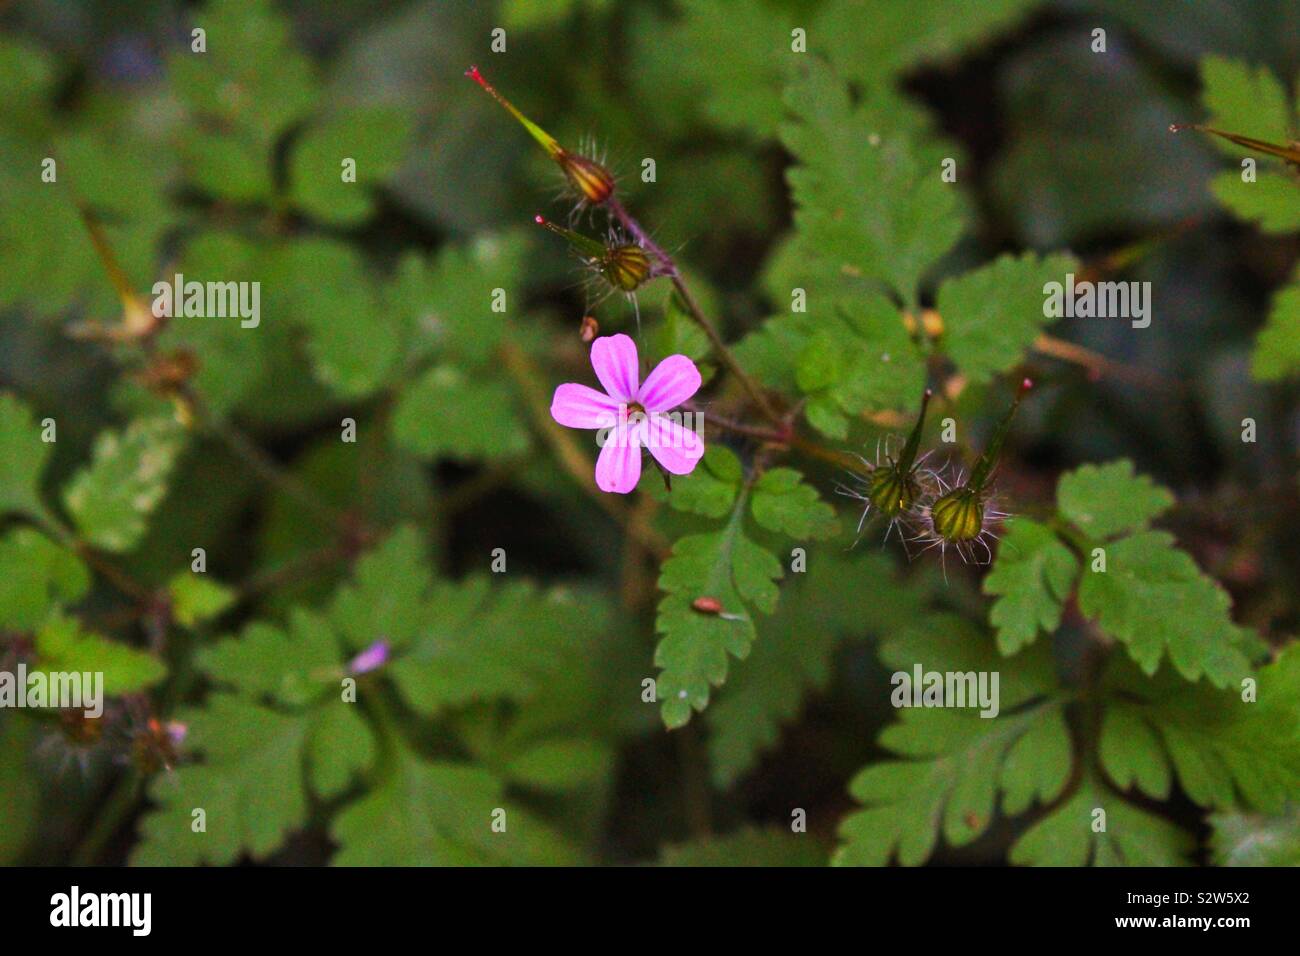 C’est une photo prise en Auvergne au lac chambon. C’est une fleur rose avec un petit insect à côté Stock Photo